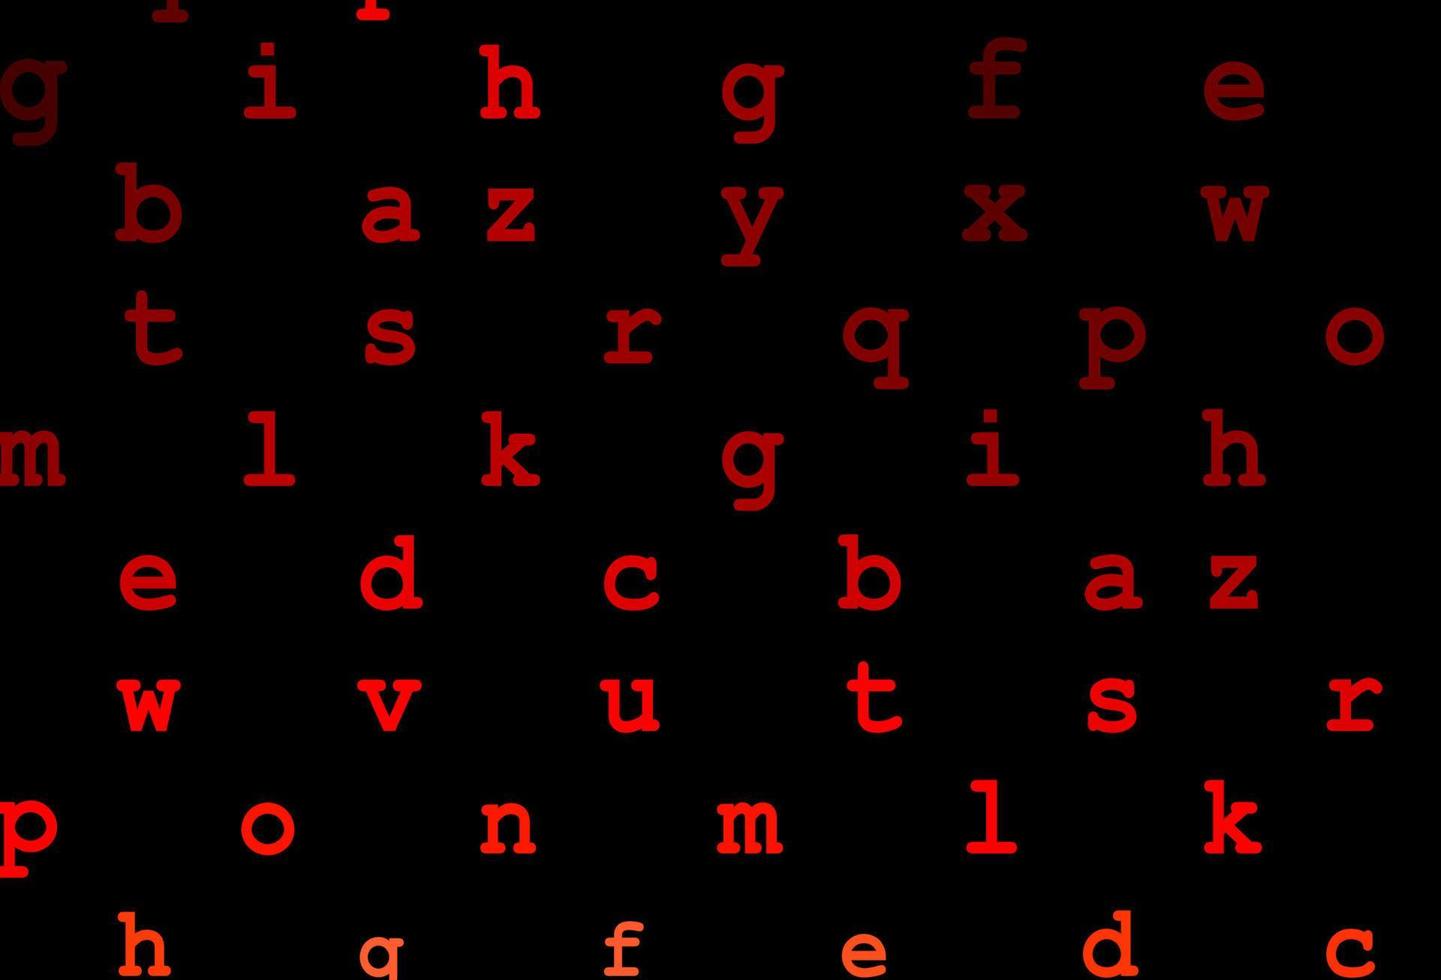 mörk röd vektor layout med latinska alfabetet.